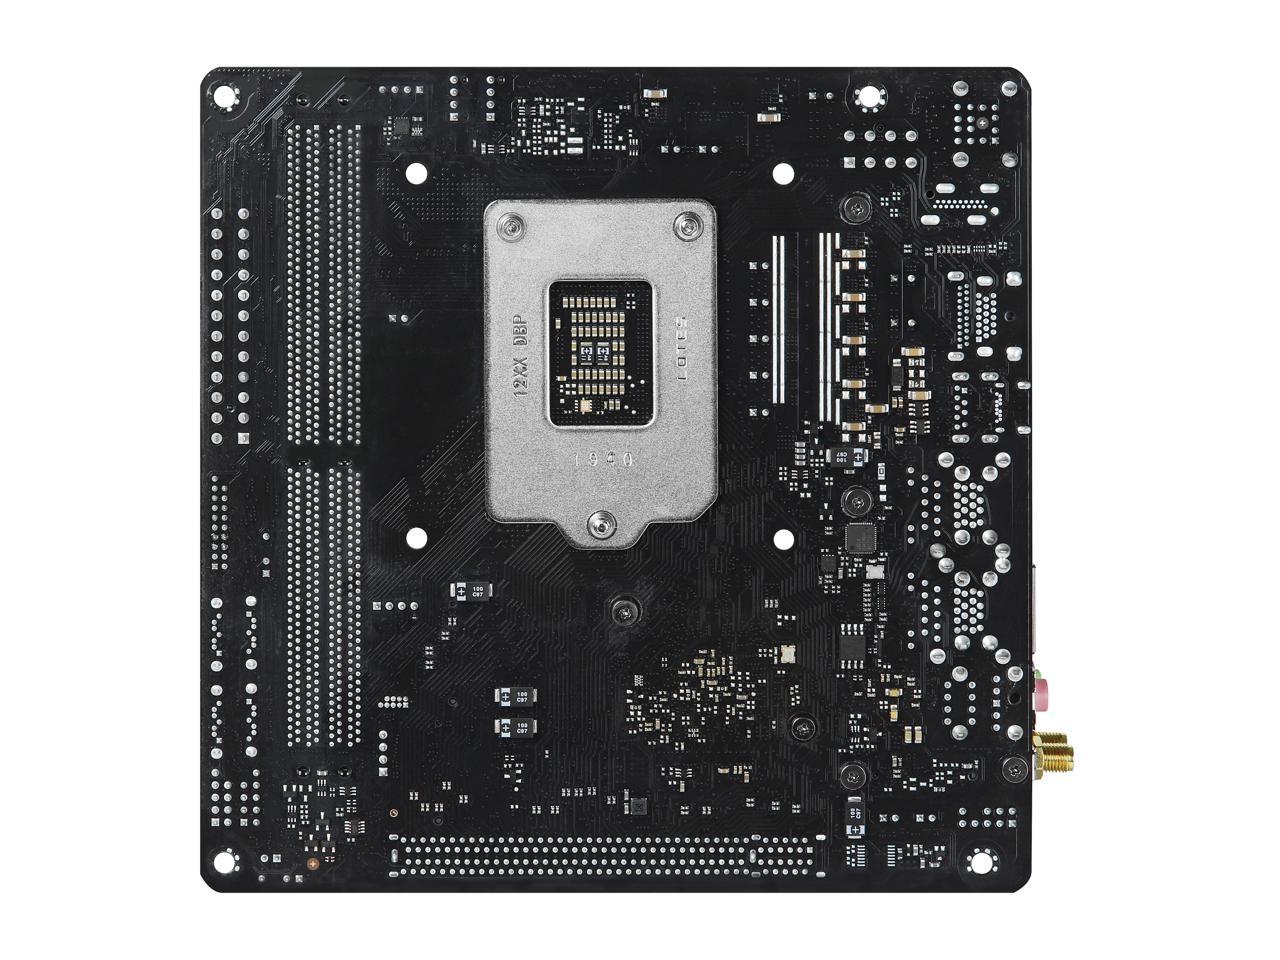 ASRock Z490M-ITX/ac LGA 1200 Intel Z490 SATA 6Gb/s Mini ITX Intel Motherboard